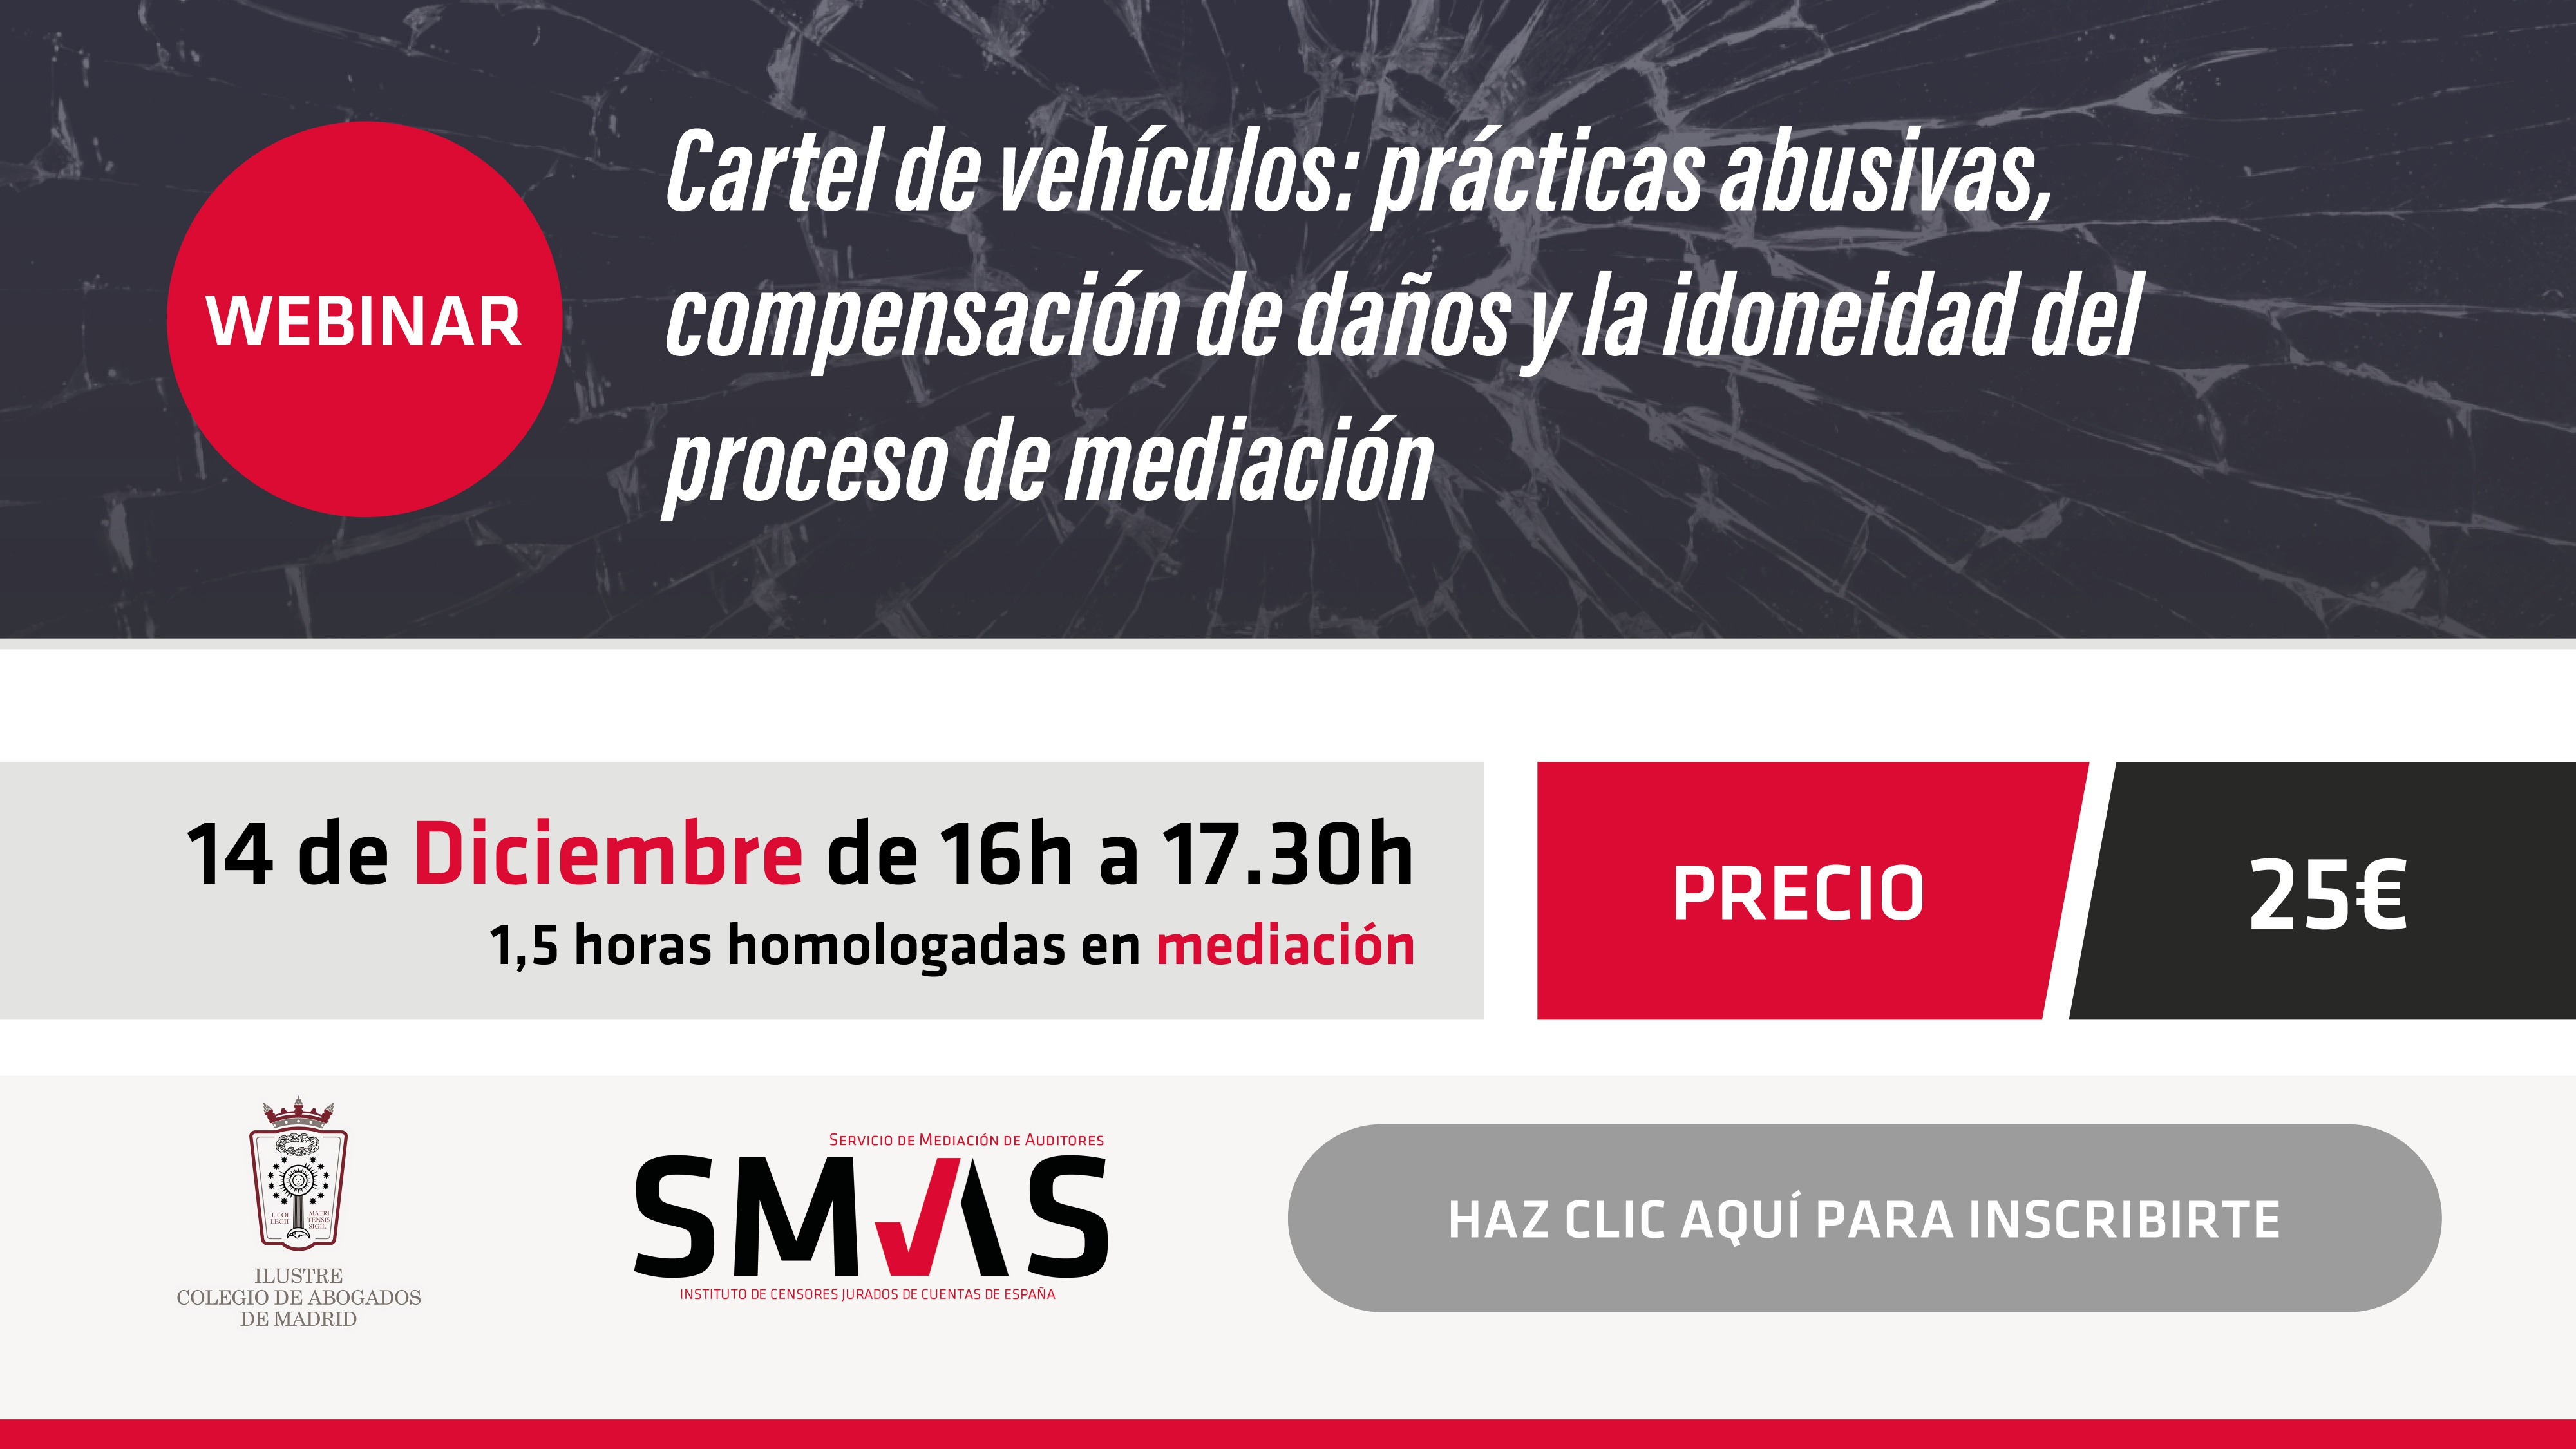 14 de diciembre: Curso conjunto de mediaICAM con el ICJCE sobre «Cartel de vehículos: prácticas abusivas, compensación de daños y la idoneidad del proceso de mediación»